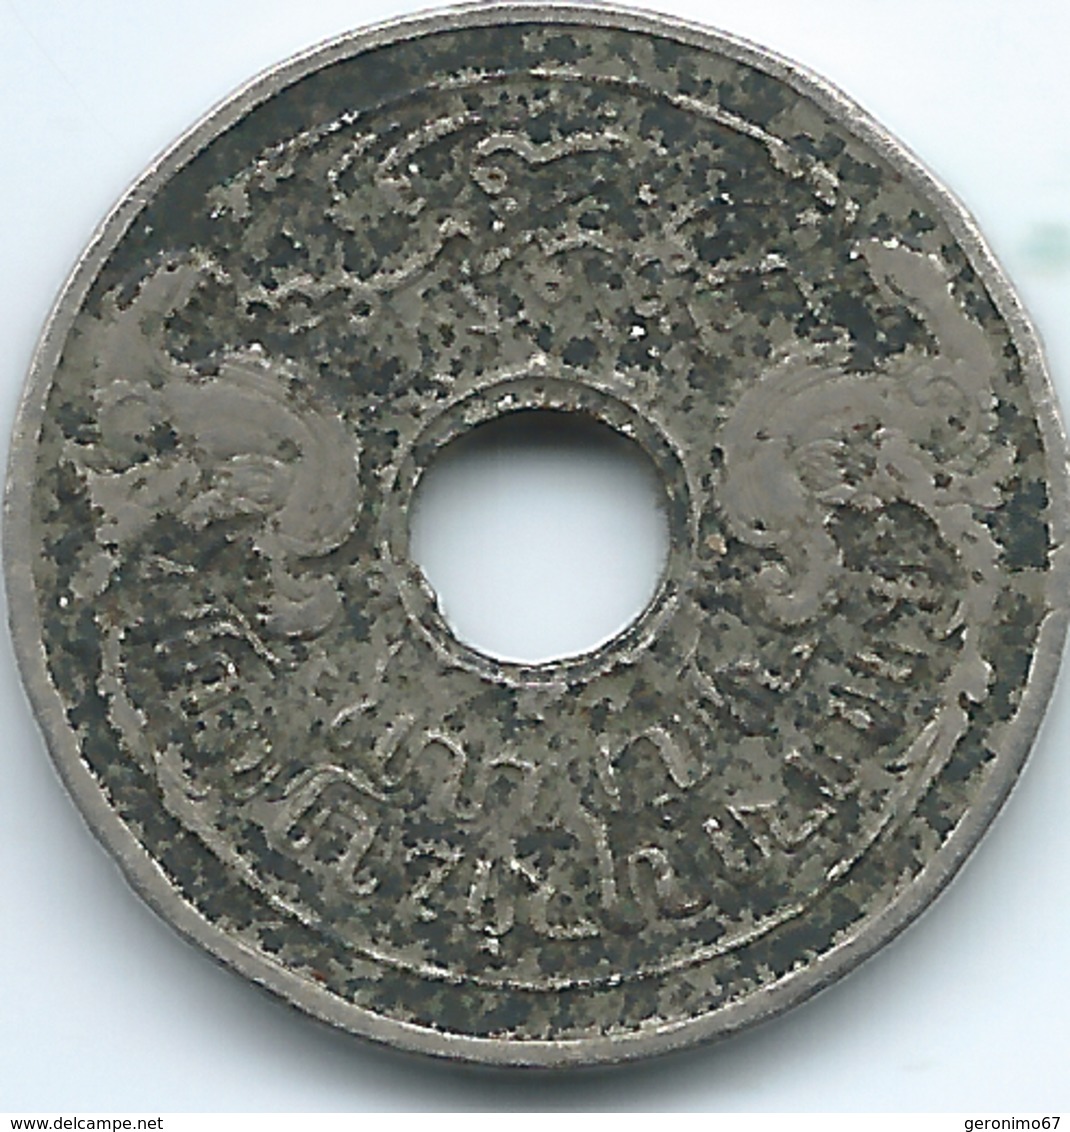 Dutch East Indies - 5 Cents - 1922 - KM313 - Niederländisch-Indien